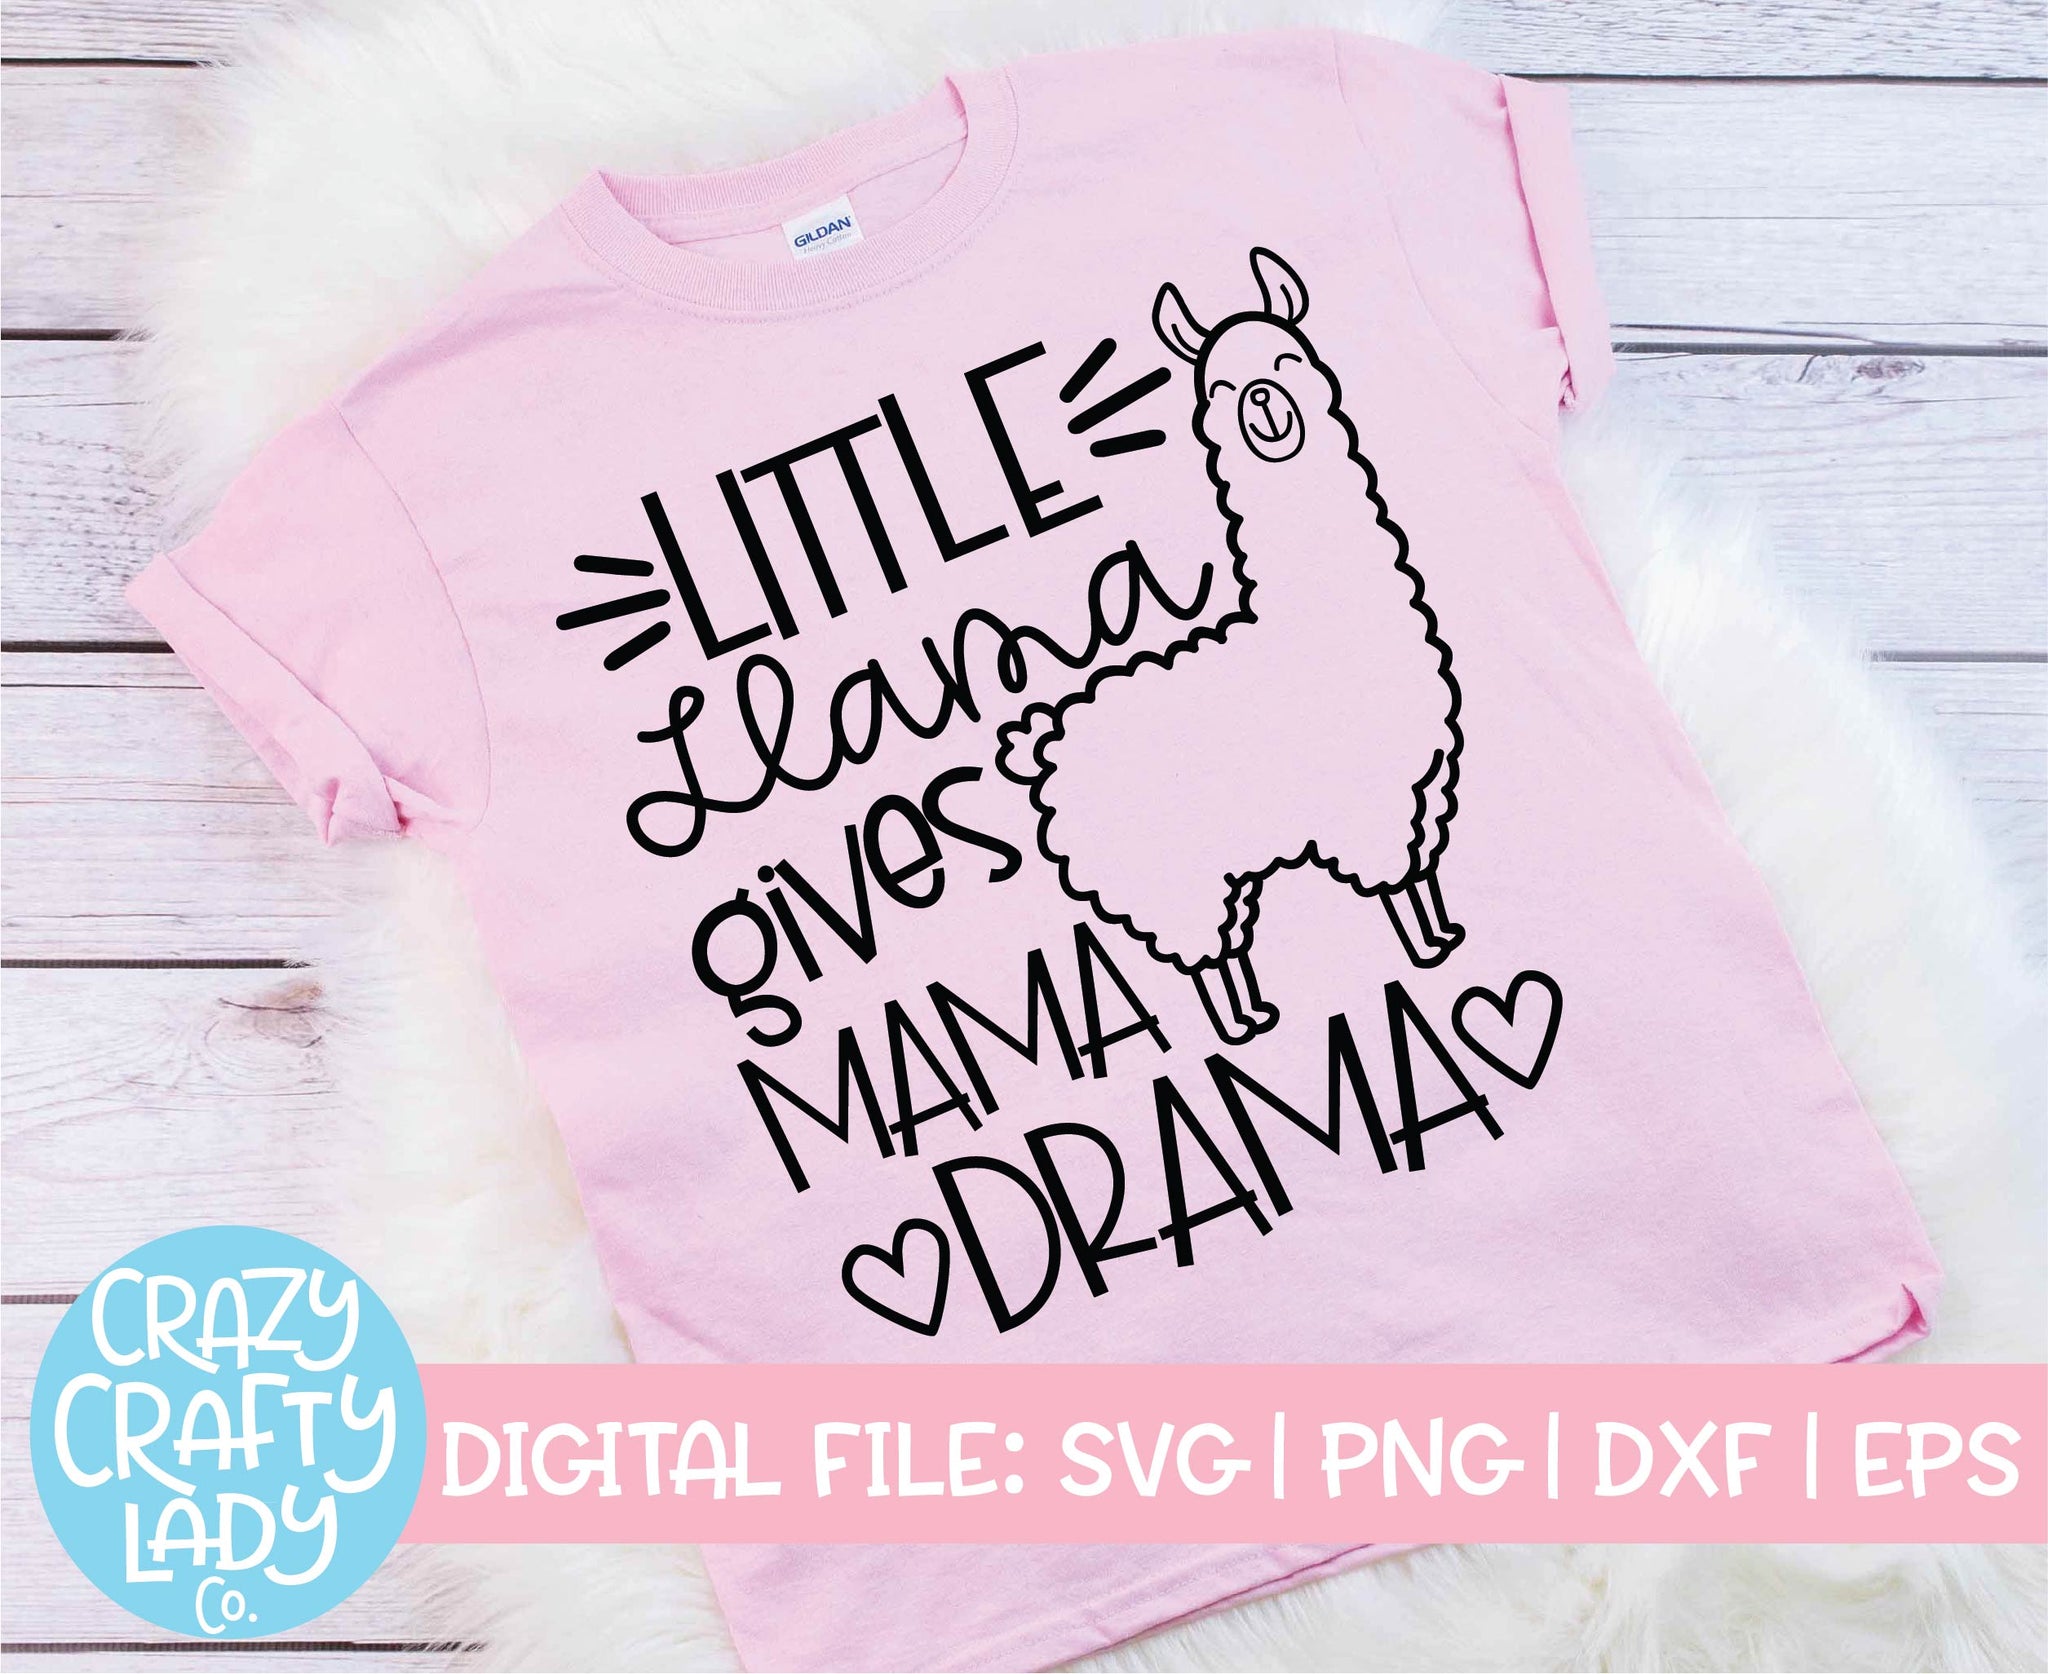 Download Mama Llama Little Llama Svg Cut File Bundle Crazy Crafty Lady Co